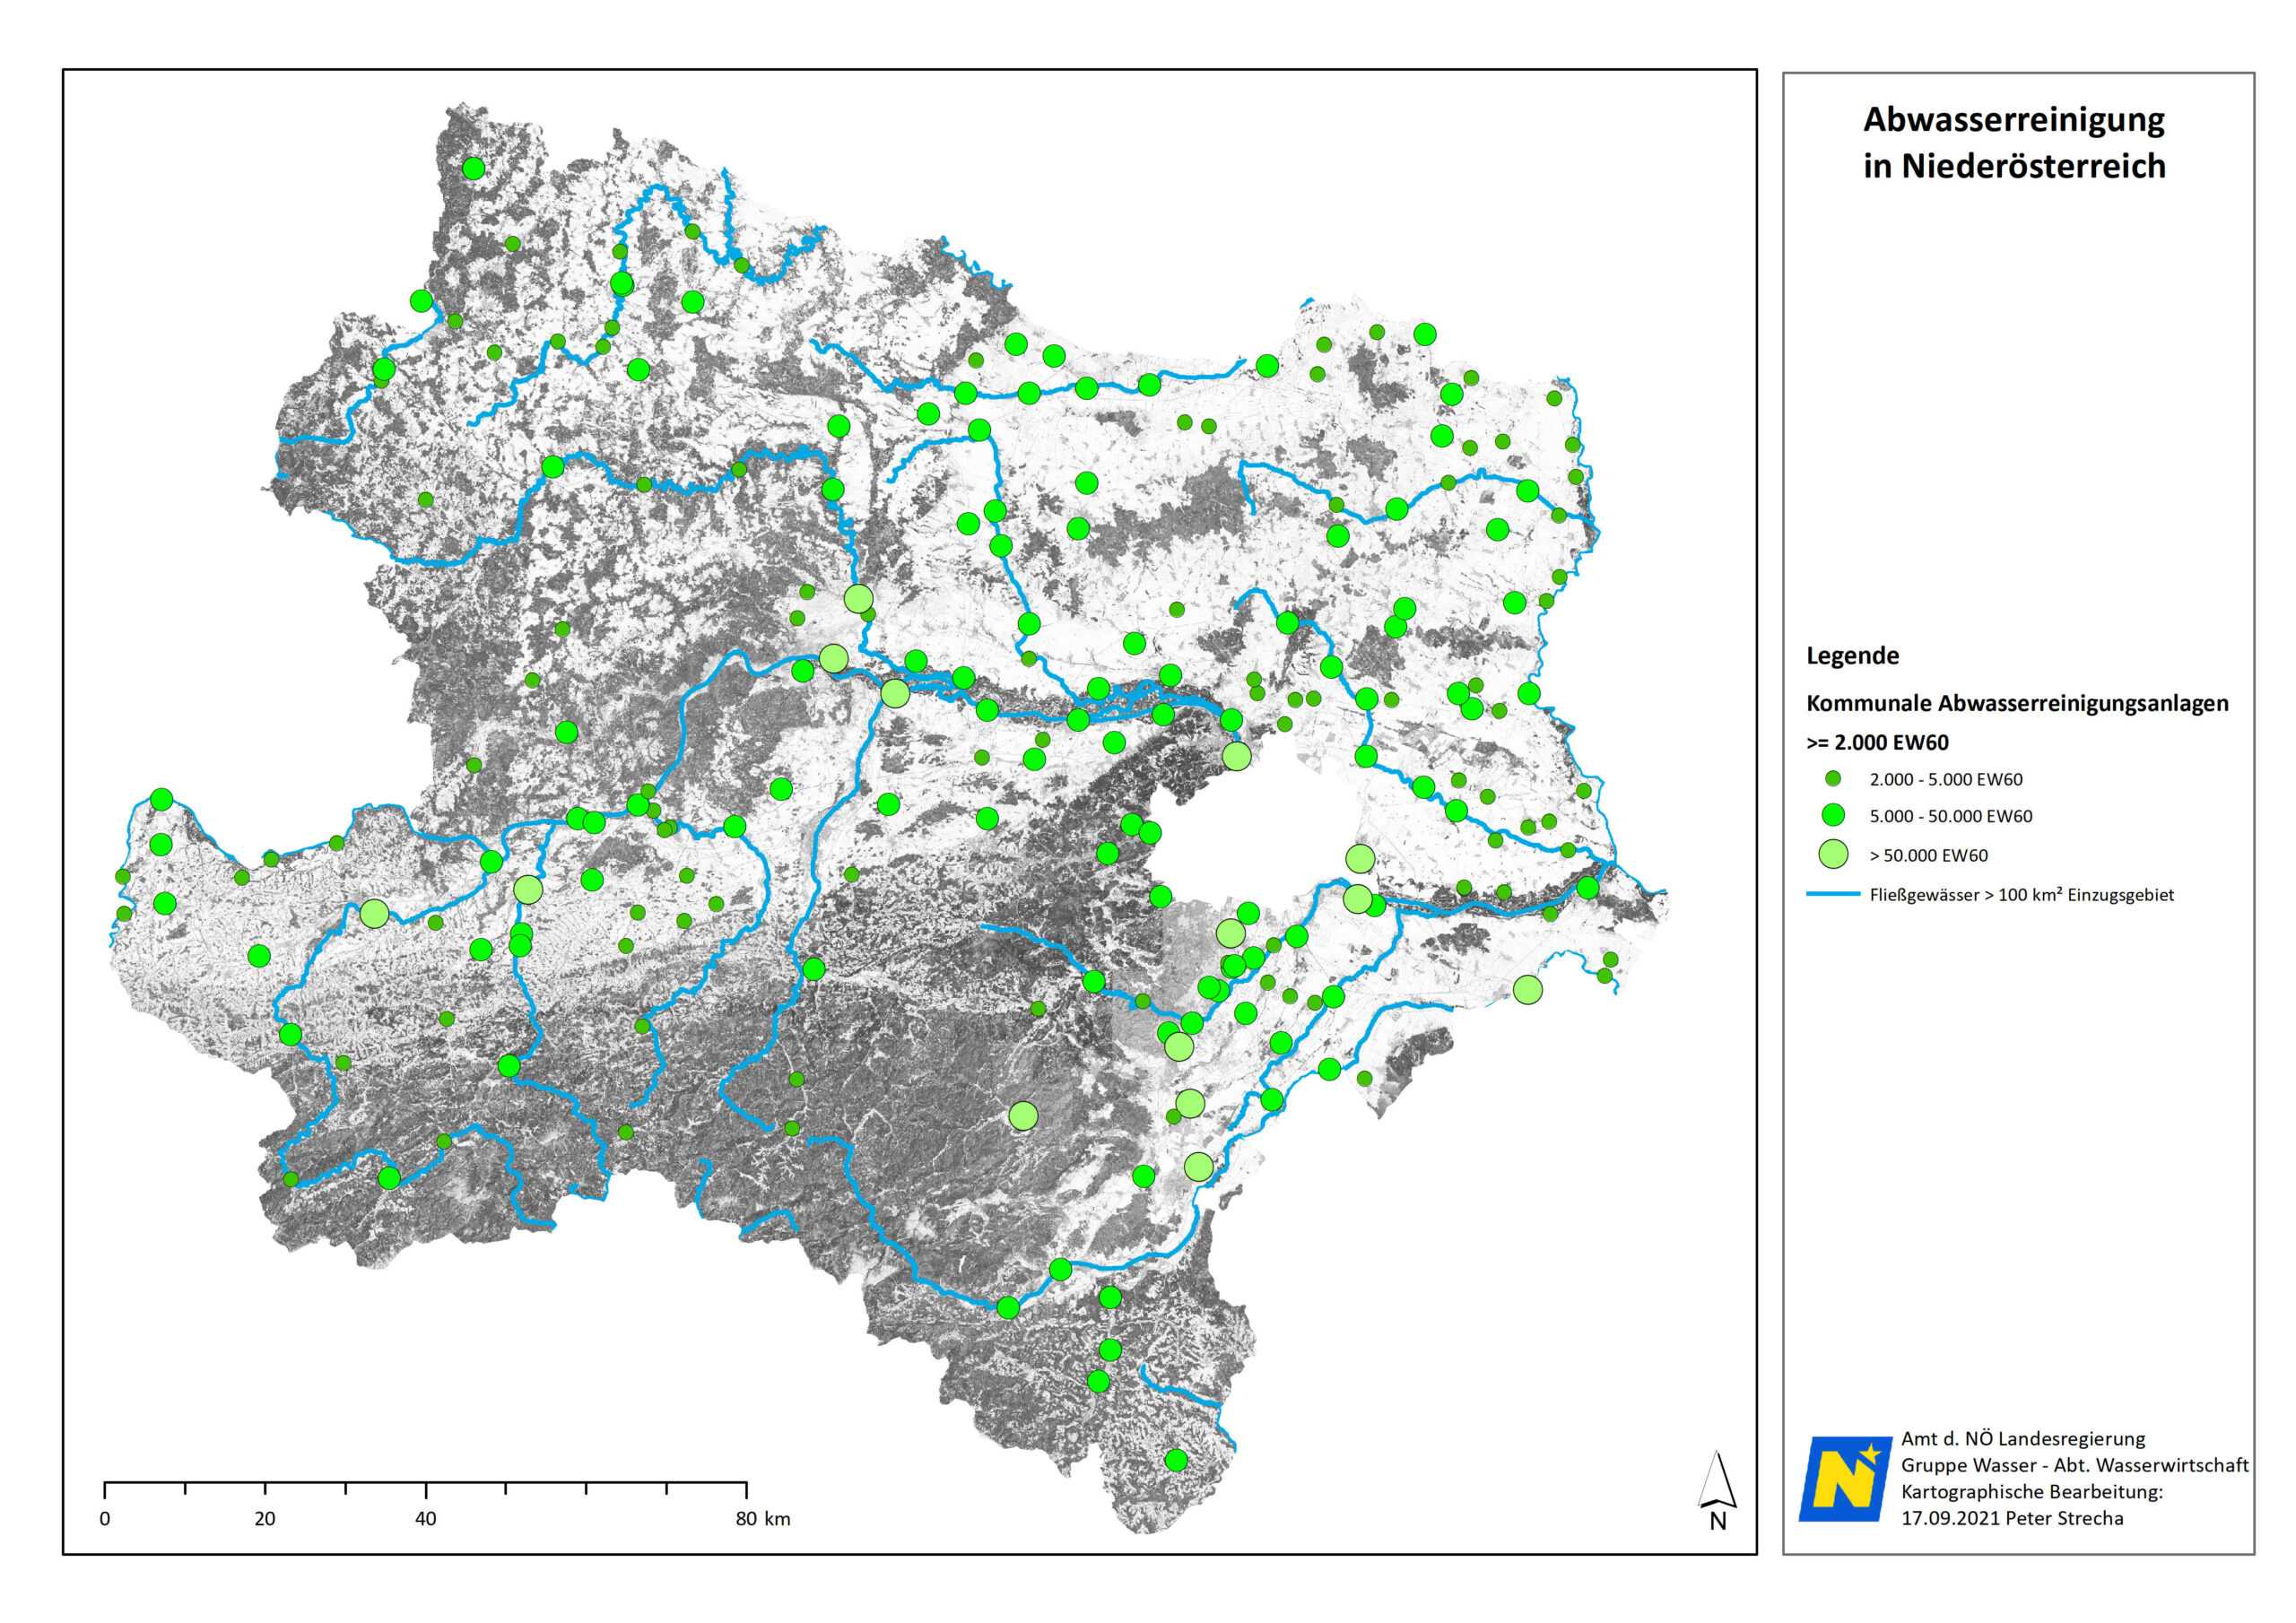 Die Grafik zeigt auf einer NÖ Landkarte verortetet Kläranlagen. In Niederösterreich leisten insgesamt 187 kommunale Kläranlagen größer 2.000 EW (Einwohnerwerte) mit einer Ausbaukapazität von insgesamt rund 4,1 Mio Einwohnerwerte einen großen Anteil zum Gewässerschutz. Dabei tragen die 14 Kläranlagen größer 50.000 EW mit einem Anteil von knapp 54 % der Kapazität, sowie die 96 Kläranlagen zwischen 5000 und 50000 EW mit rd. 40 % der Kapazität den Hauptanteil der Abwasserreinigung. Das restliche Abwasser wird dezentral über Kleinkläranlagen und Senkgruben entsorgt.